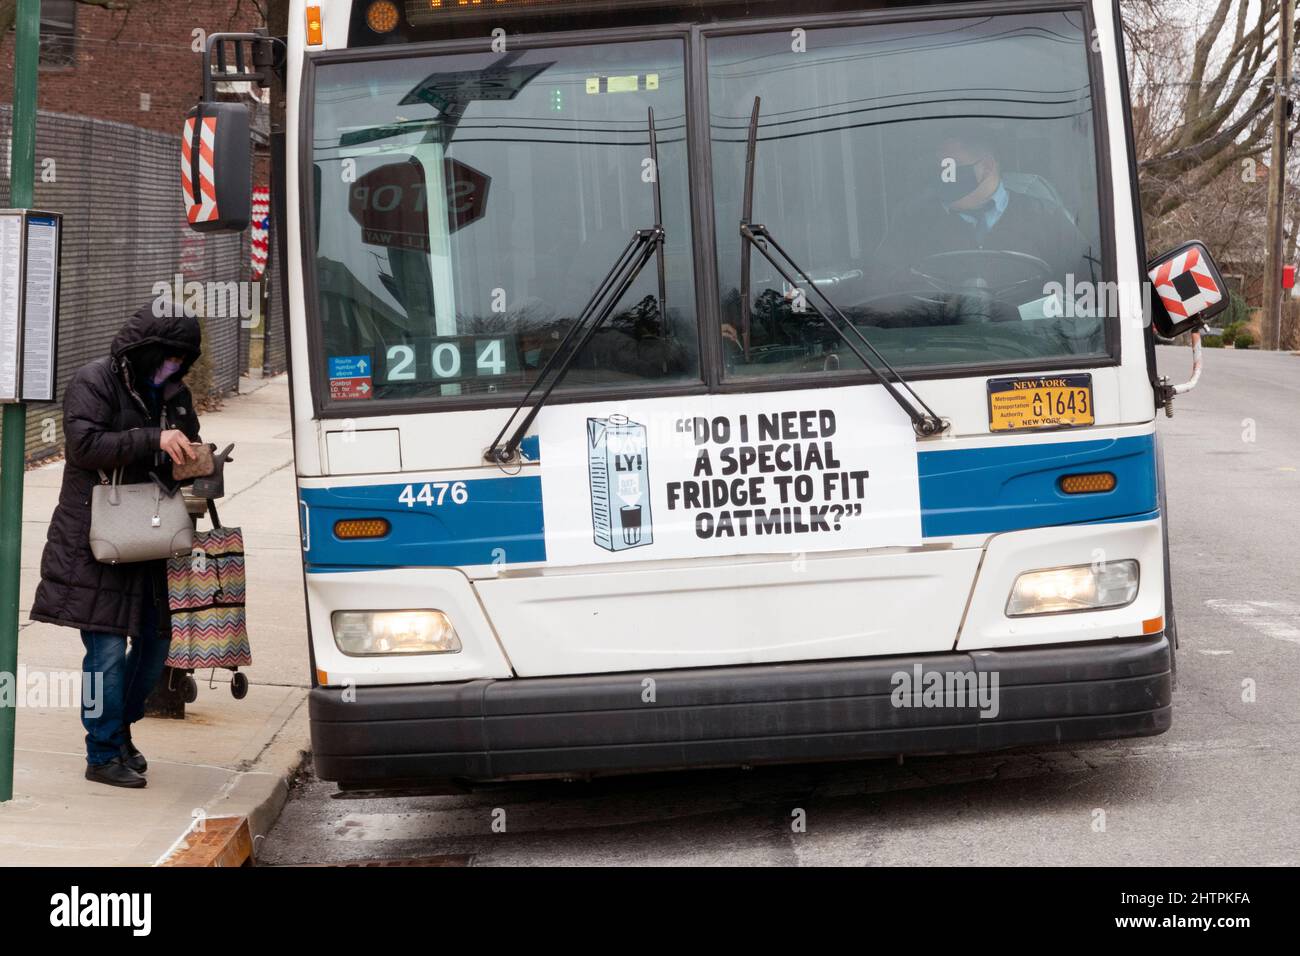 BRAUCHE ICH EINEN SPEZIELLEN KÜHLSCHRANK? Eine witzige, witzige, respektlos erscheinende Oatly Hafermilch-Anzeige auf der Vorderseite eines New York City-Busses in Flushing, Queens, New York City. Stockfoto